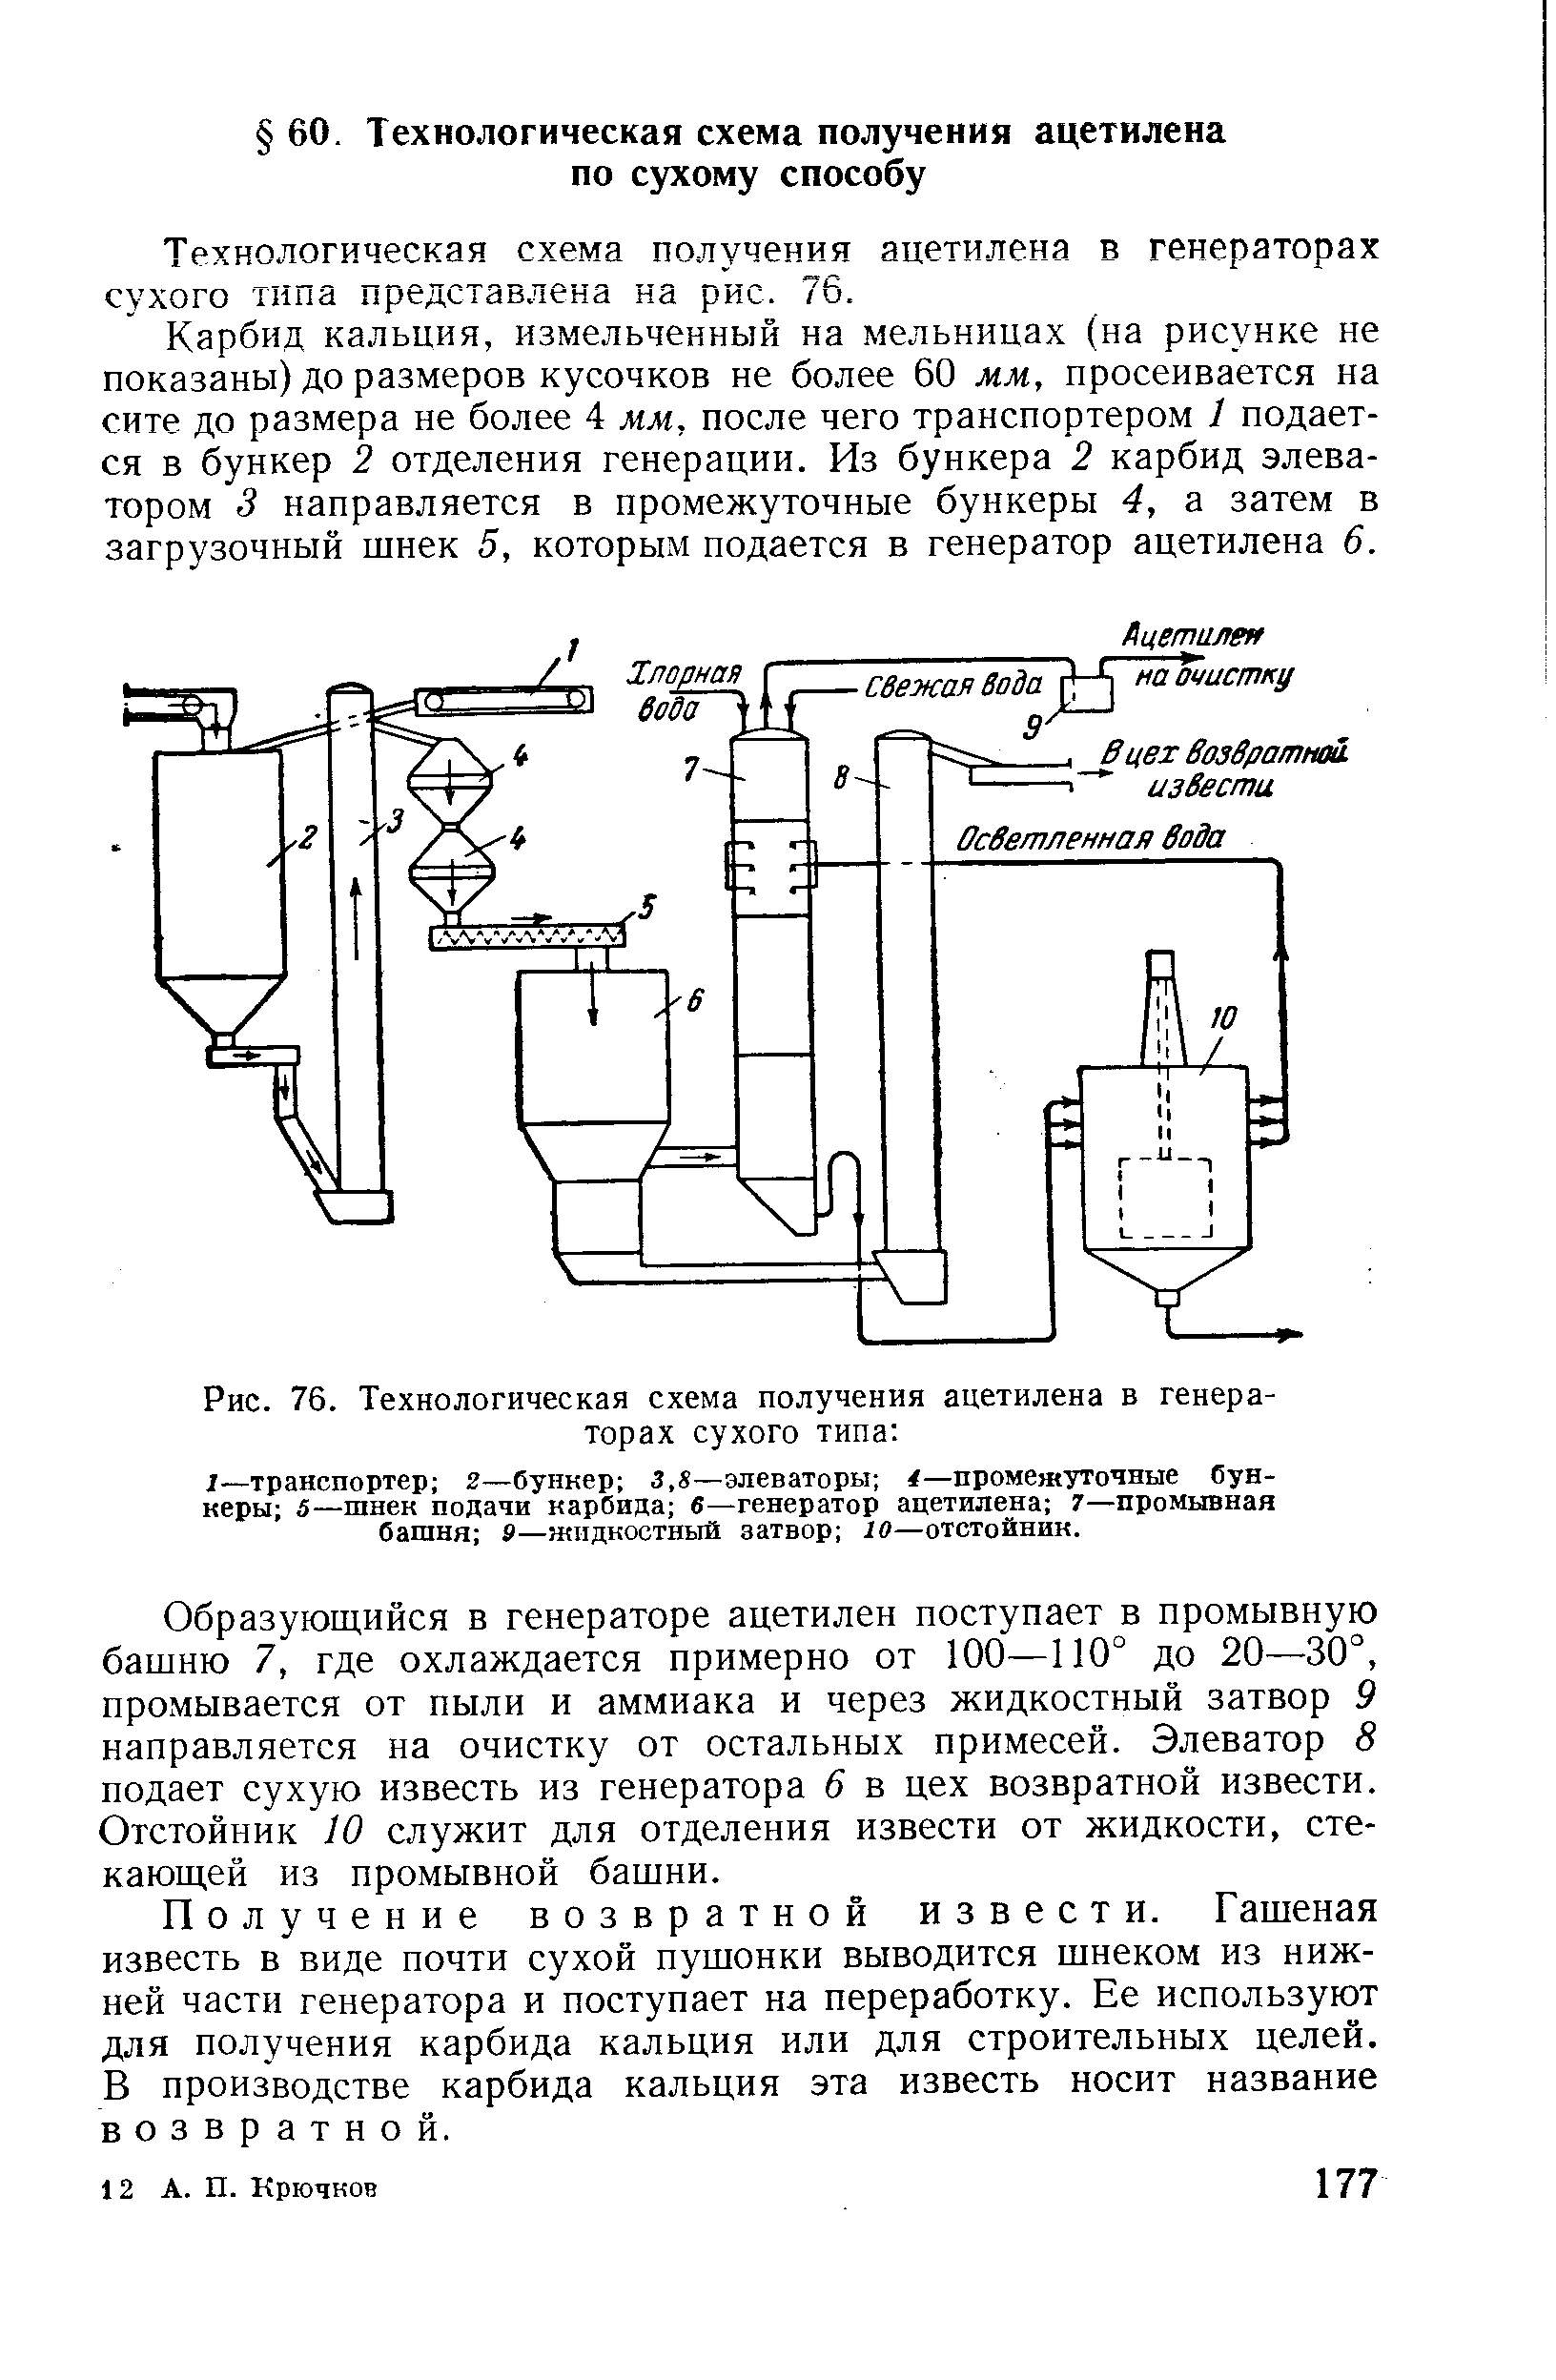 Технологическая схема получения ацетилена в генераторах сухого типа представлена на рис. 76.